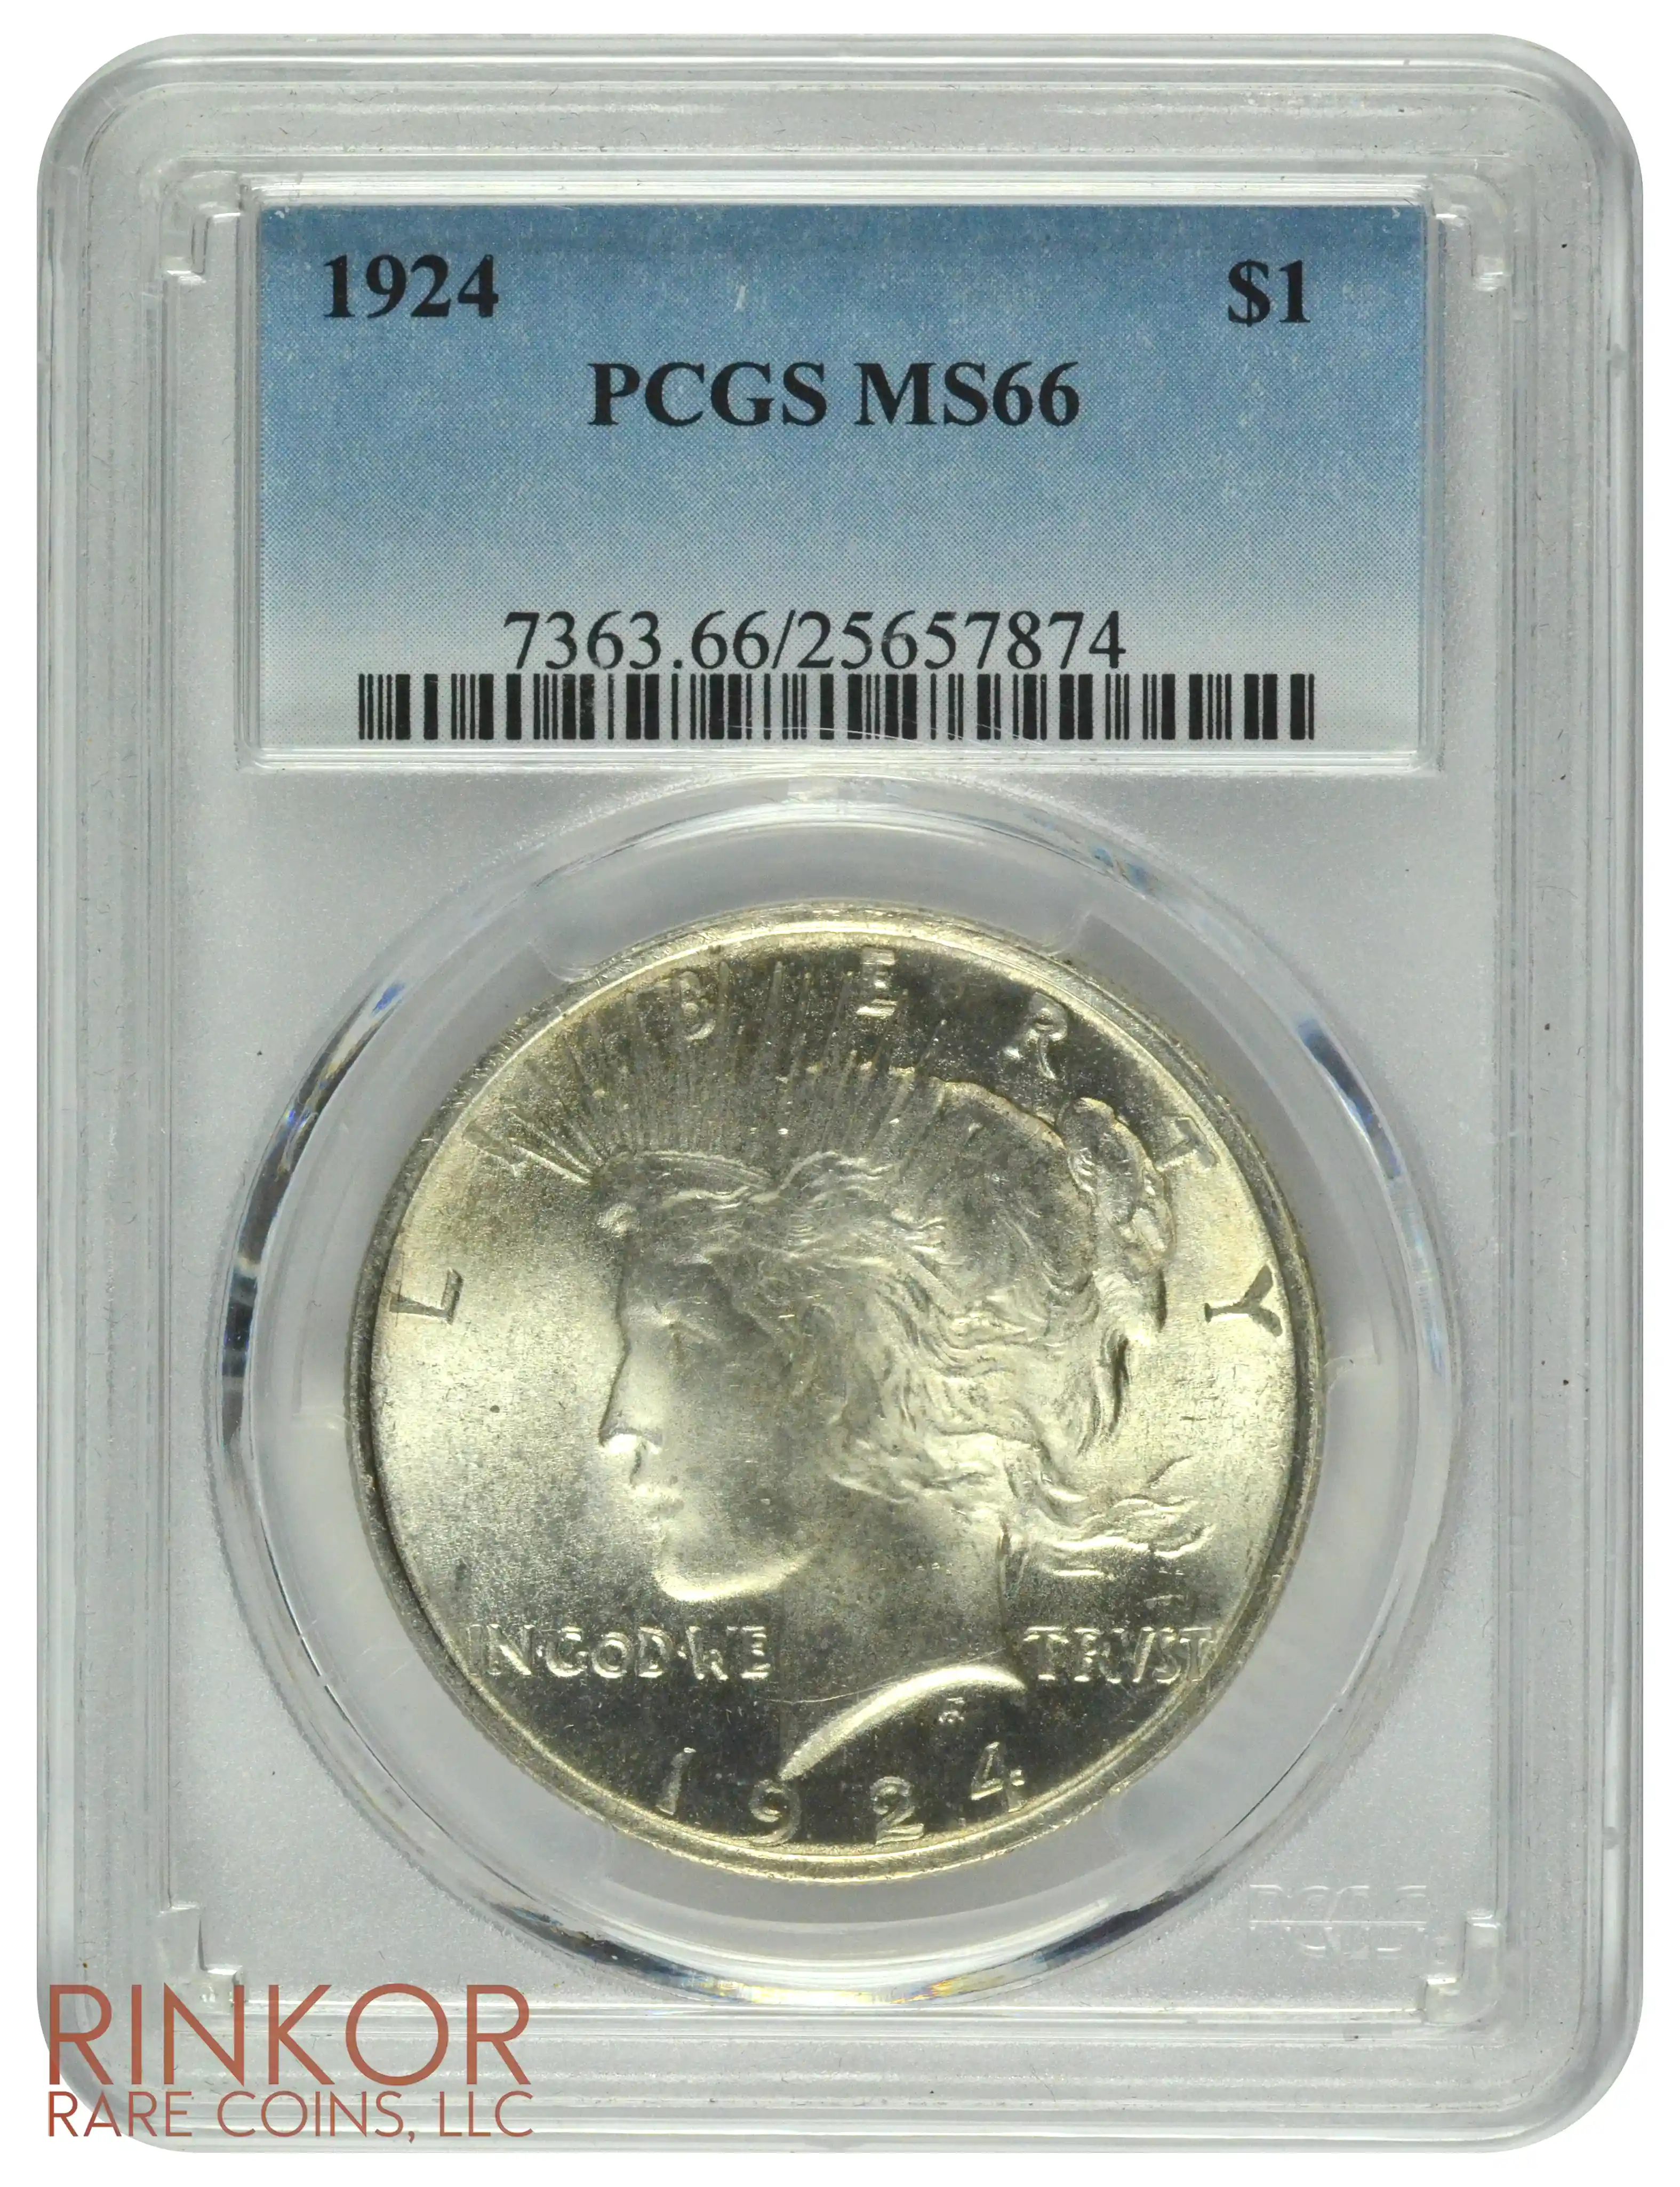 1924 $1 PCGS MS 66